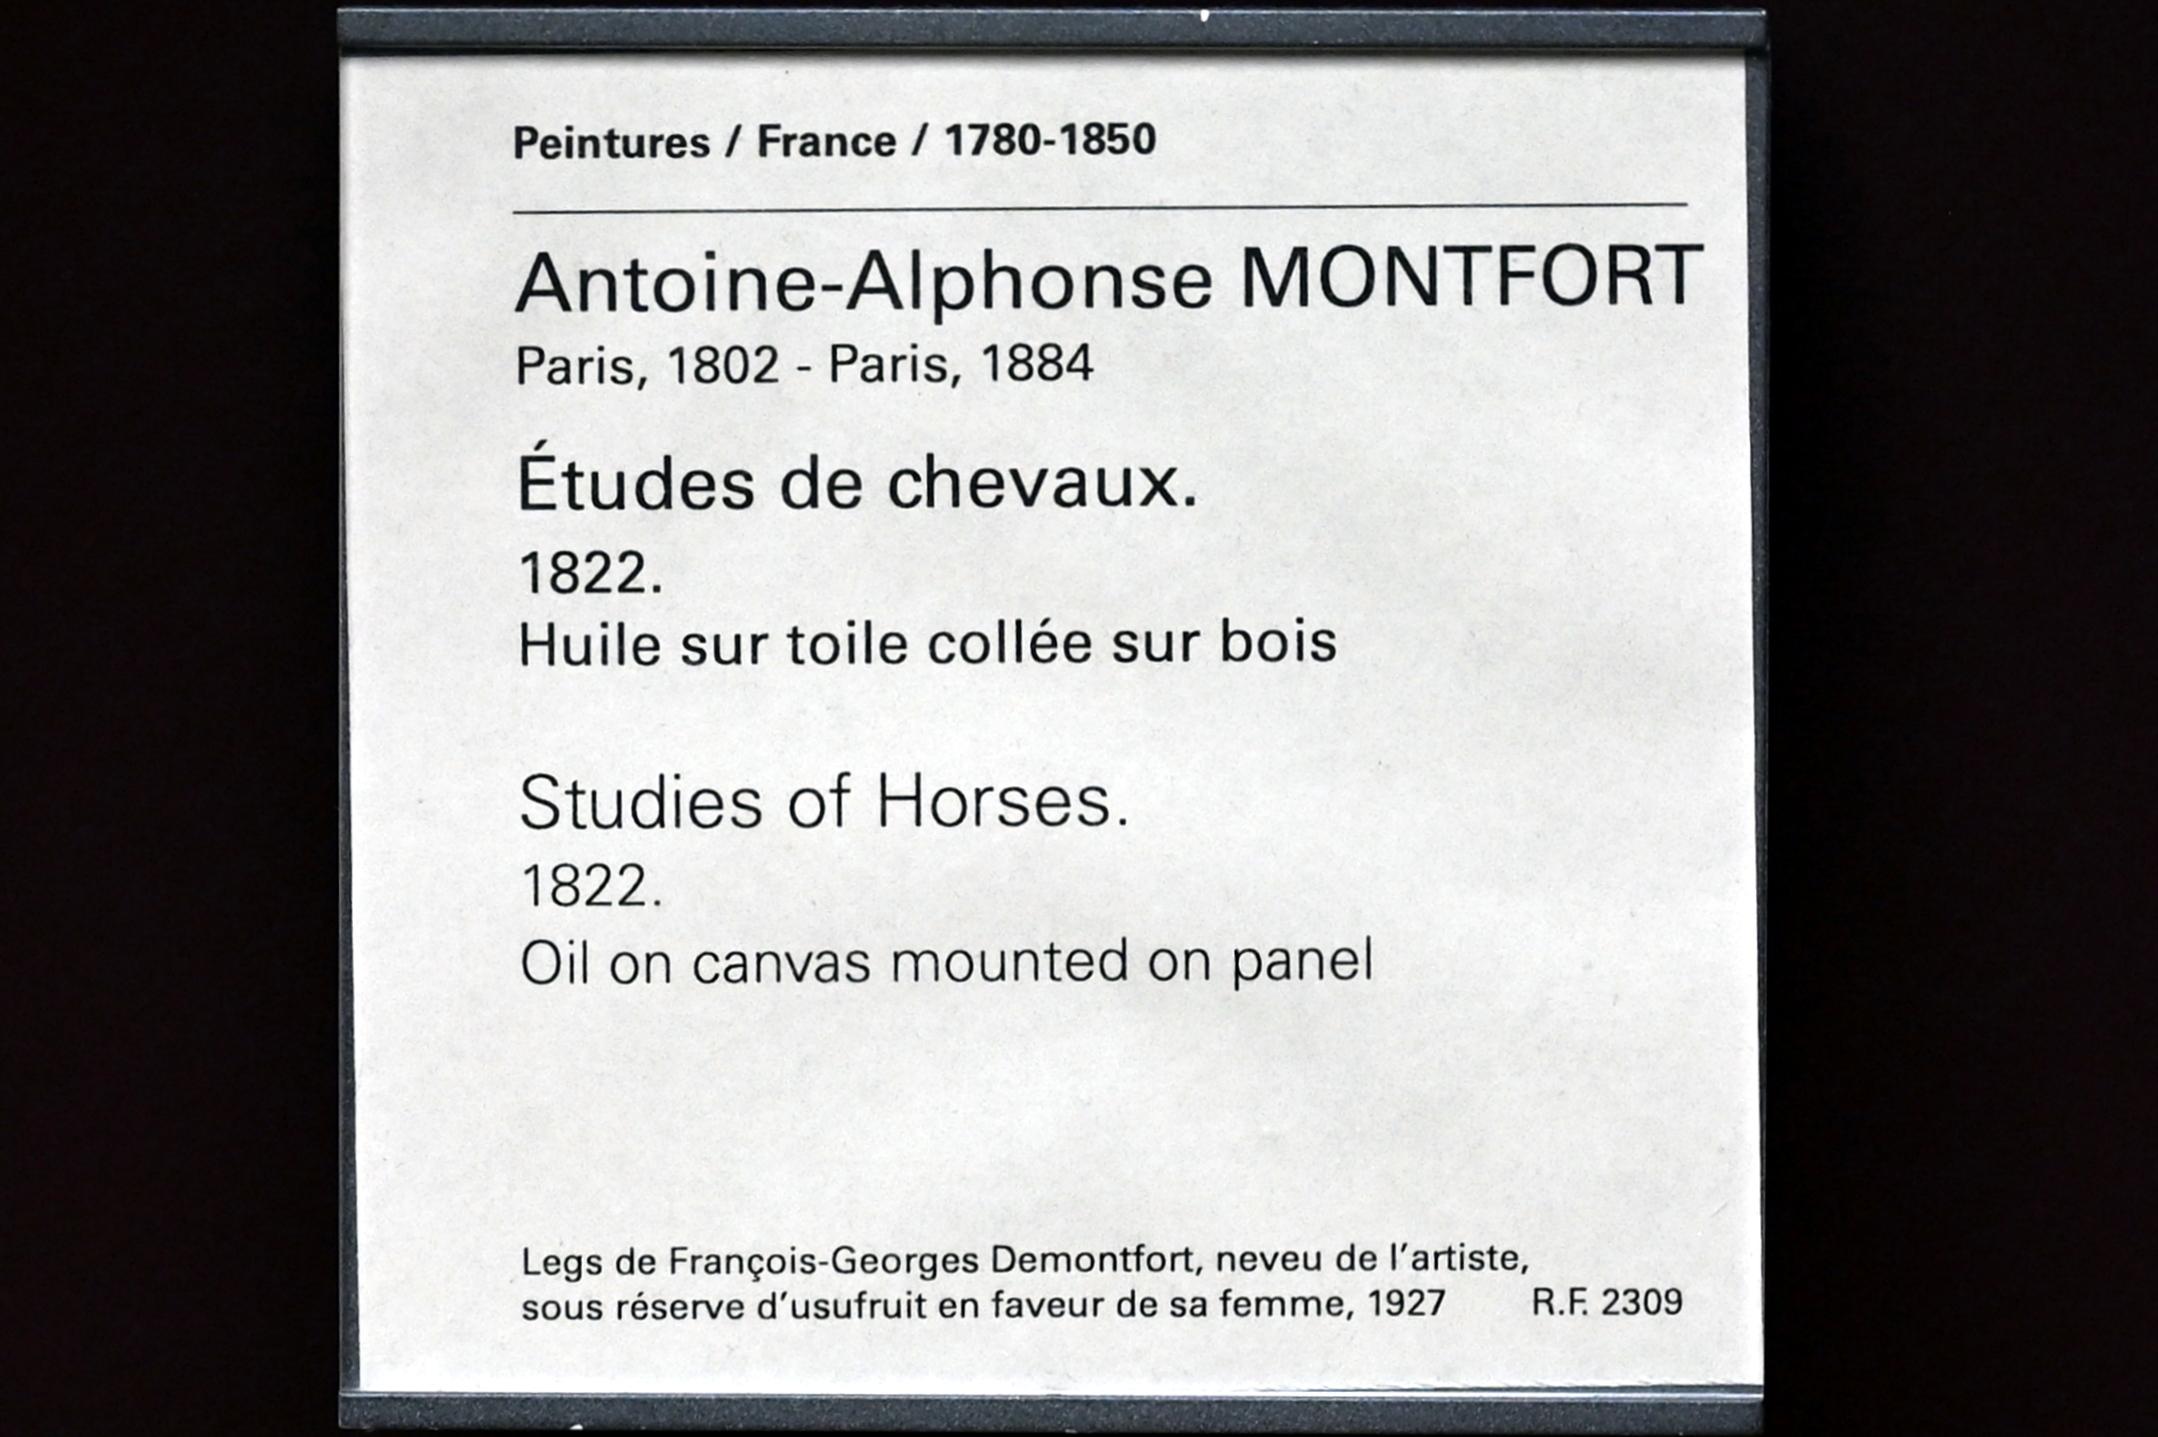 Antoine-Alphonse Montfort (1822), Pferdestudien, Paris, Musée du Louvre, Saal 941, 1822, Bild 2/2